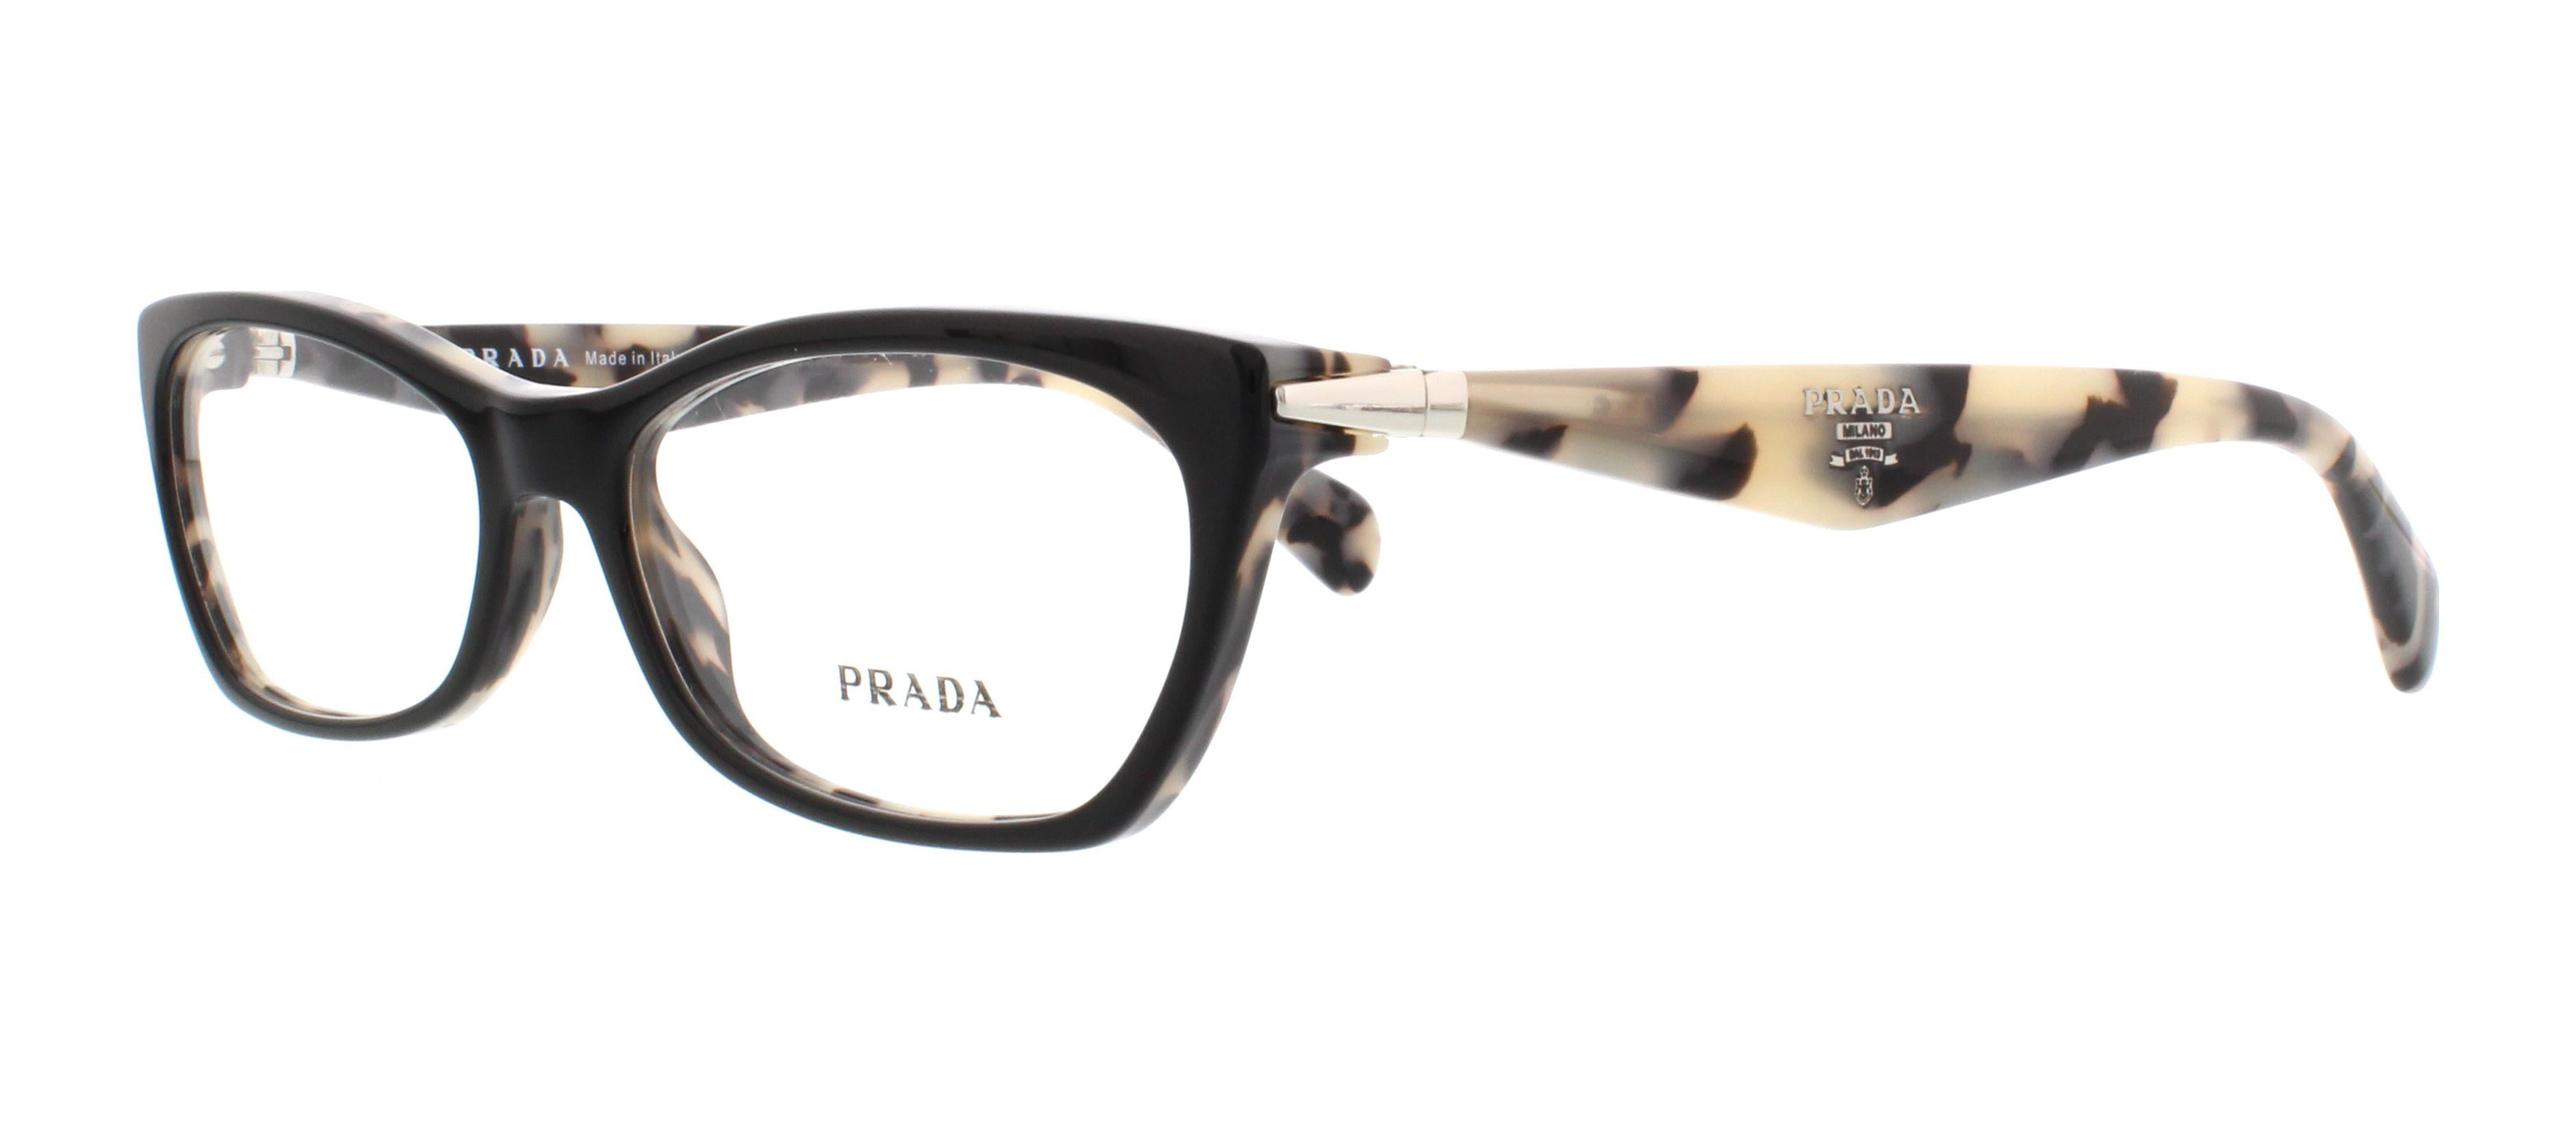 prada glasses frames canada